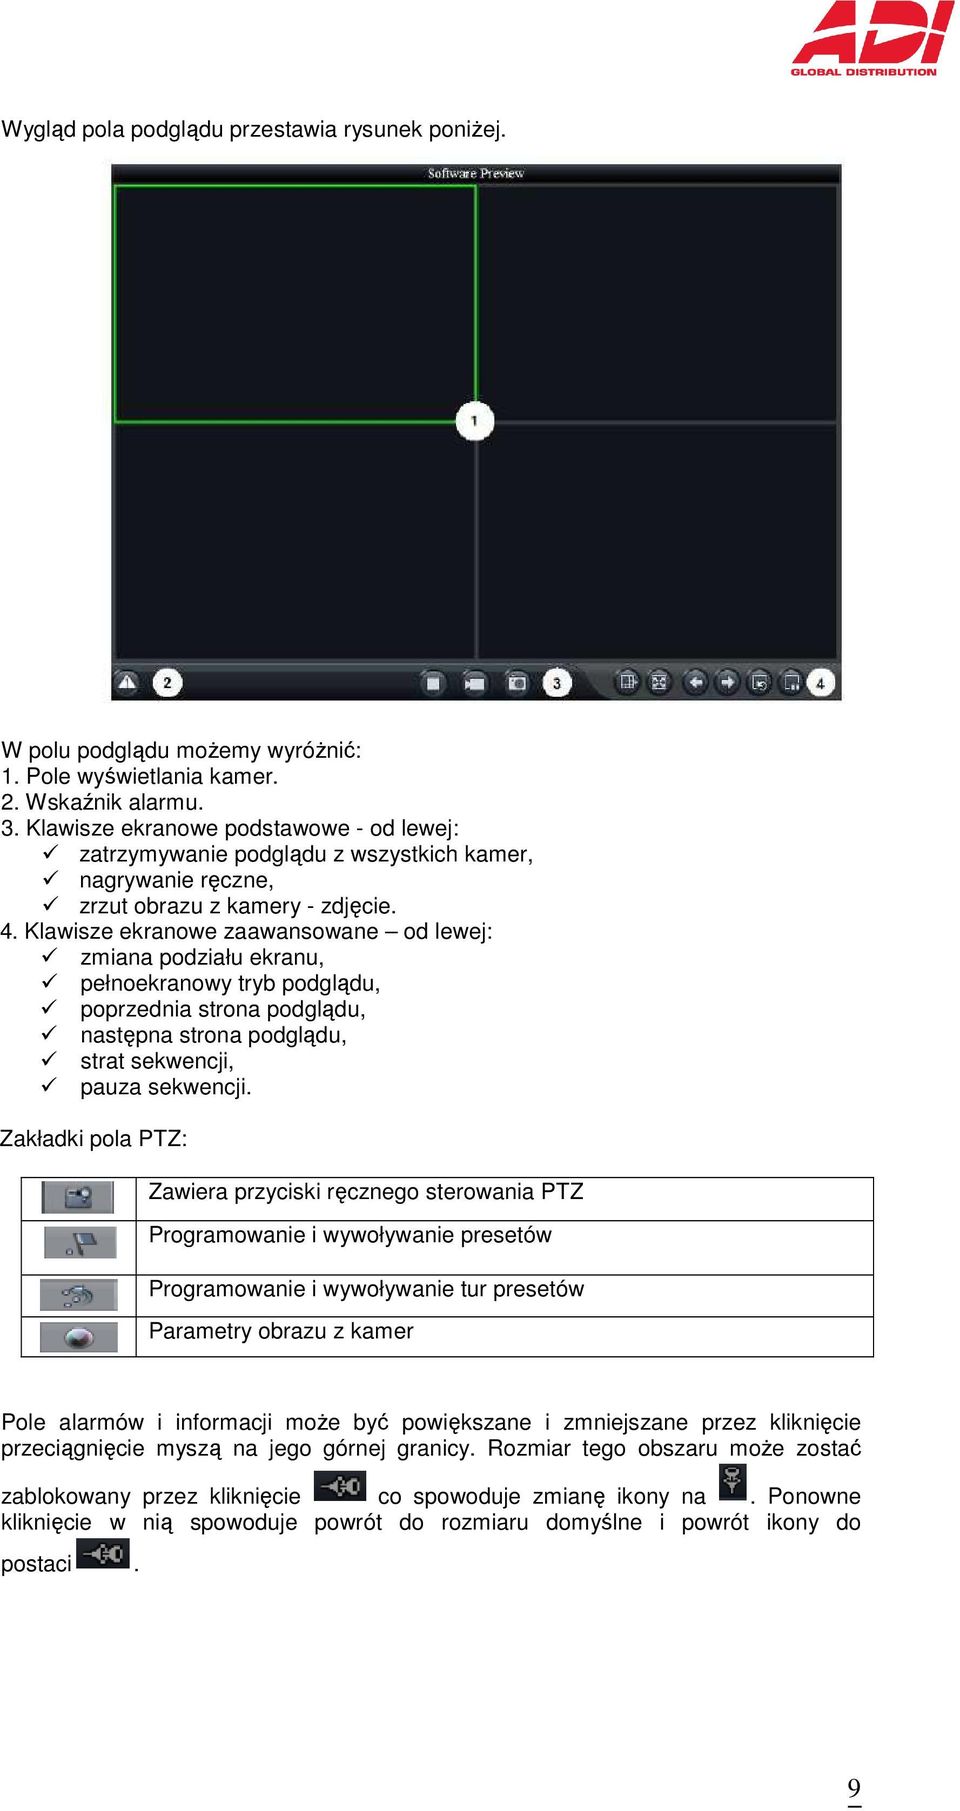 Klawisze ekranowe zaawansowane od lewej: zmiana podziału ekranu, pełnoekranowy tryb podglądu, poprzednia strona podglądu, następna strona podglądu, strat sekwencji, pauza sekwencji.